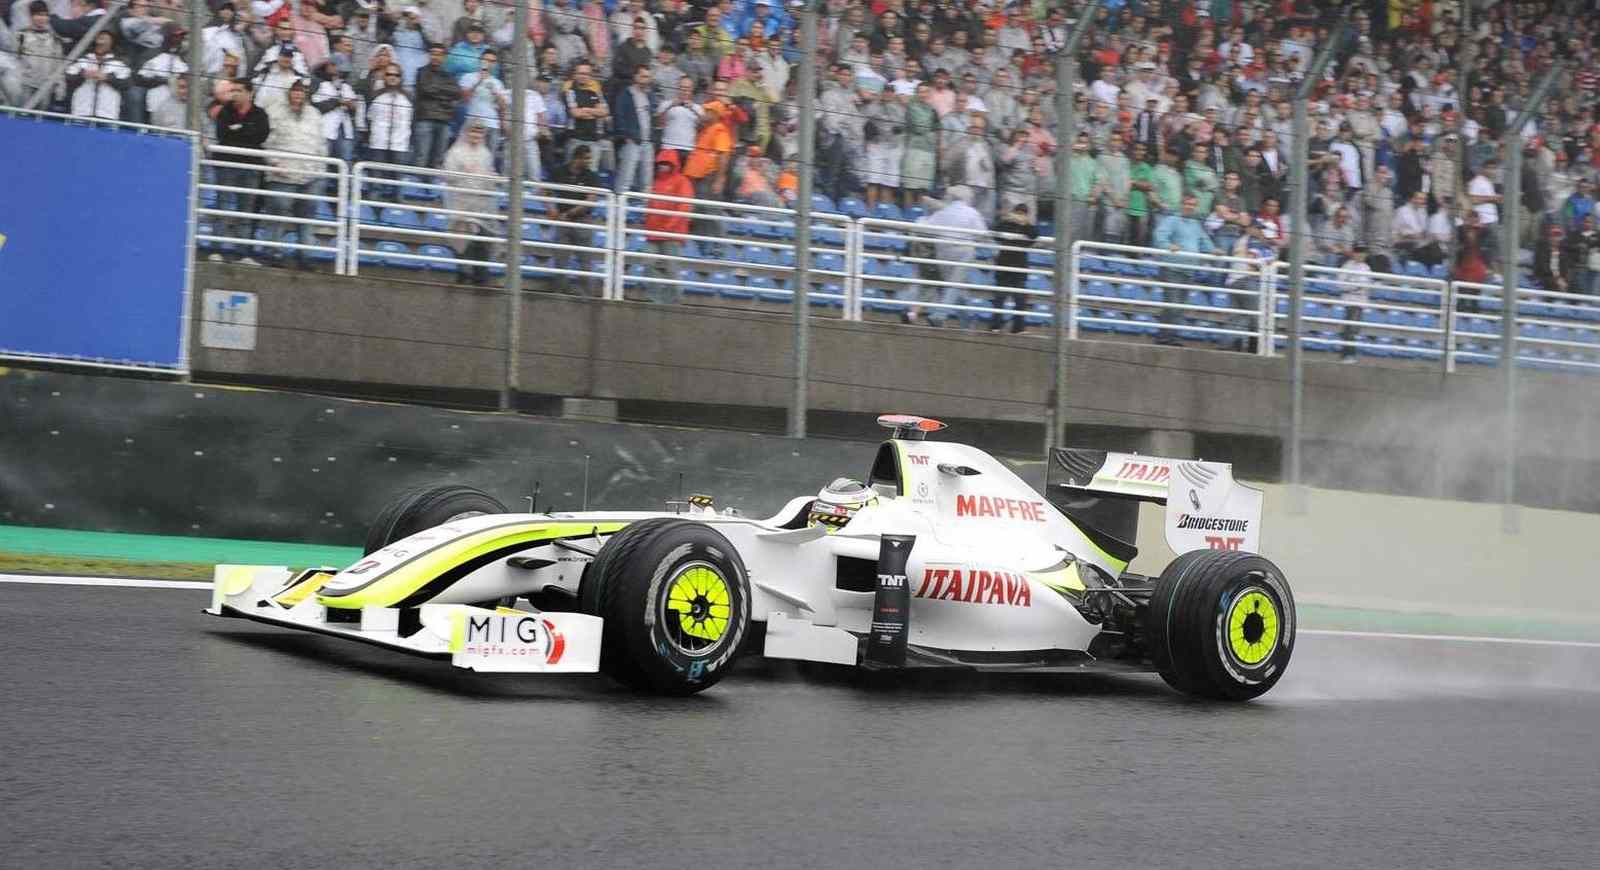 O único título mundial de Jenson Button veio em 2009, guiando a Brawn GP